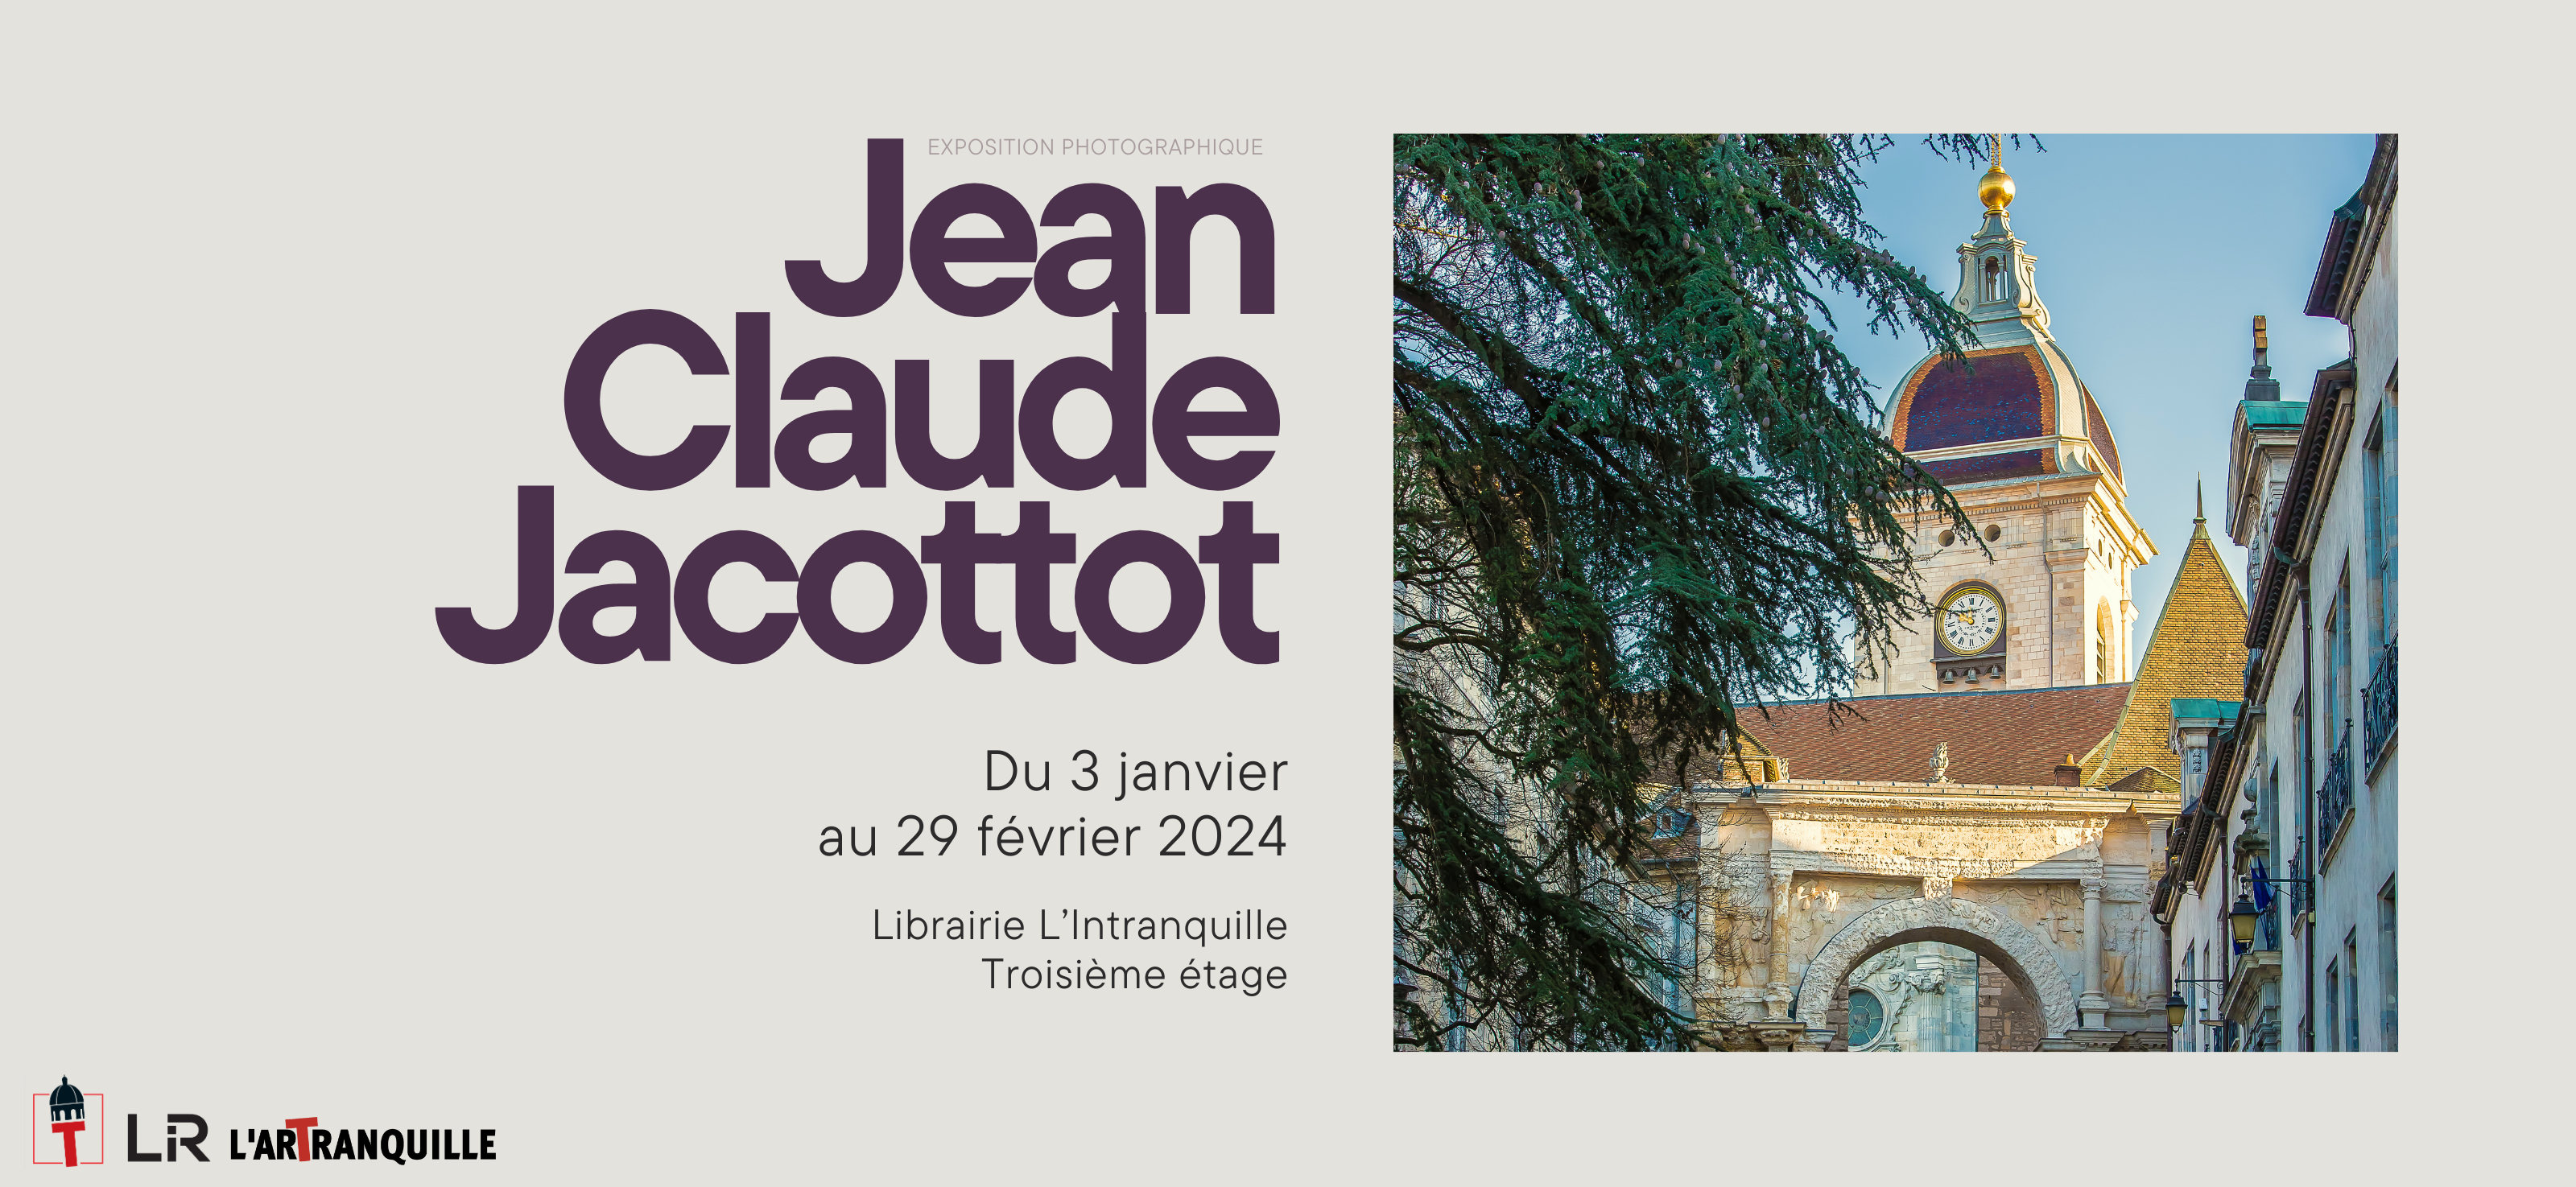 Exposition de J.C. Jacottot